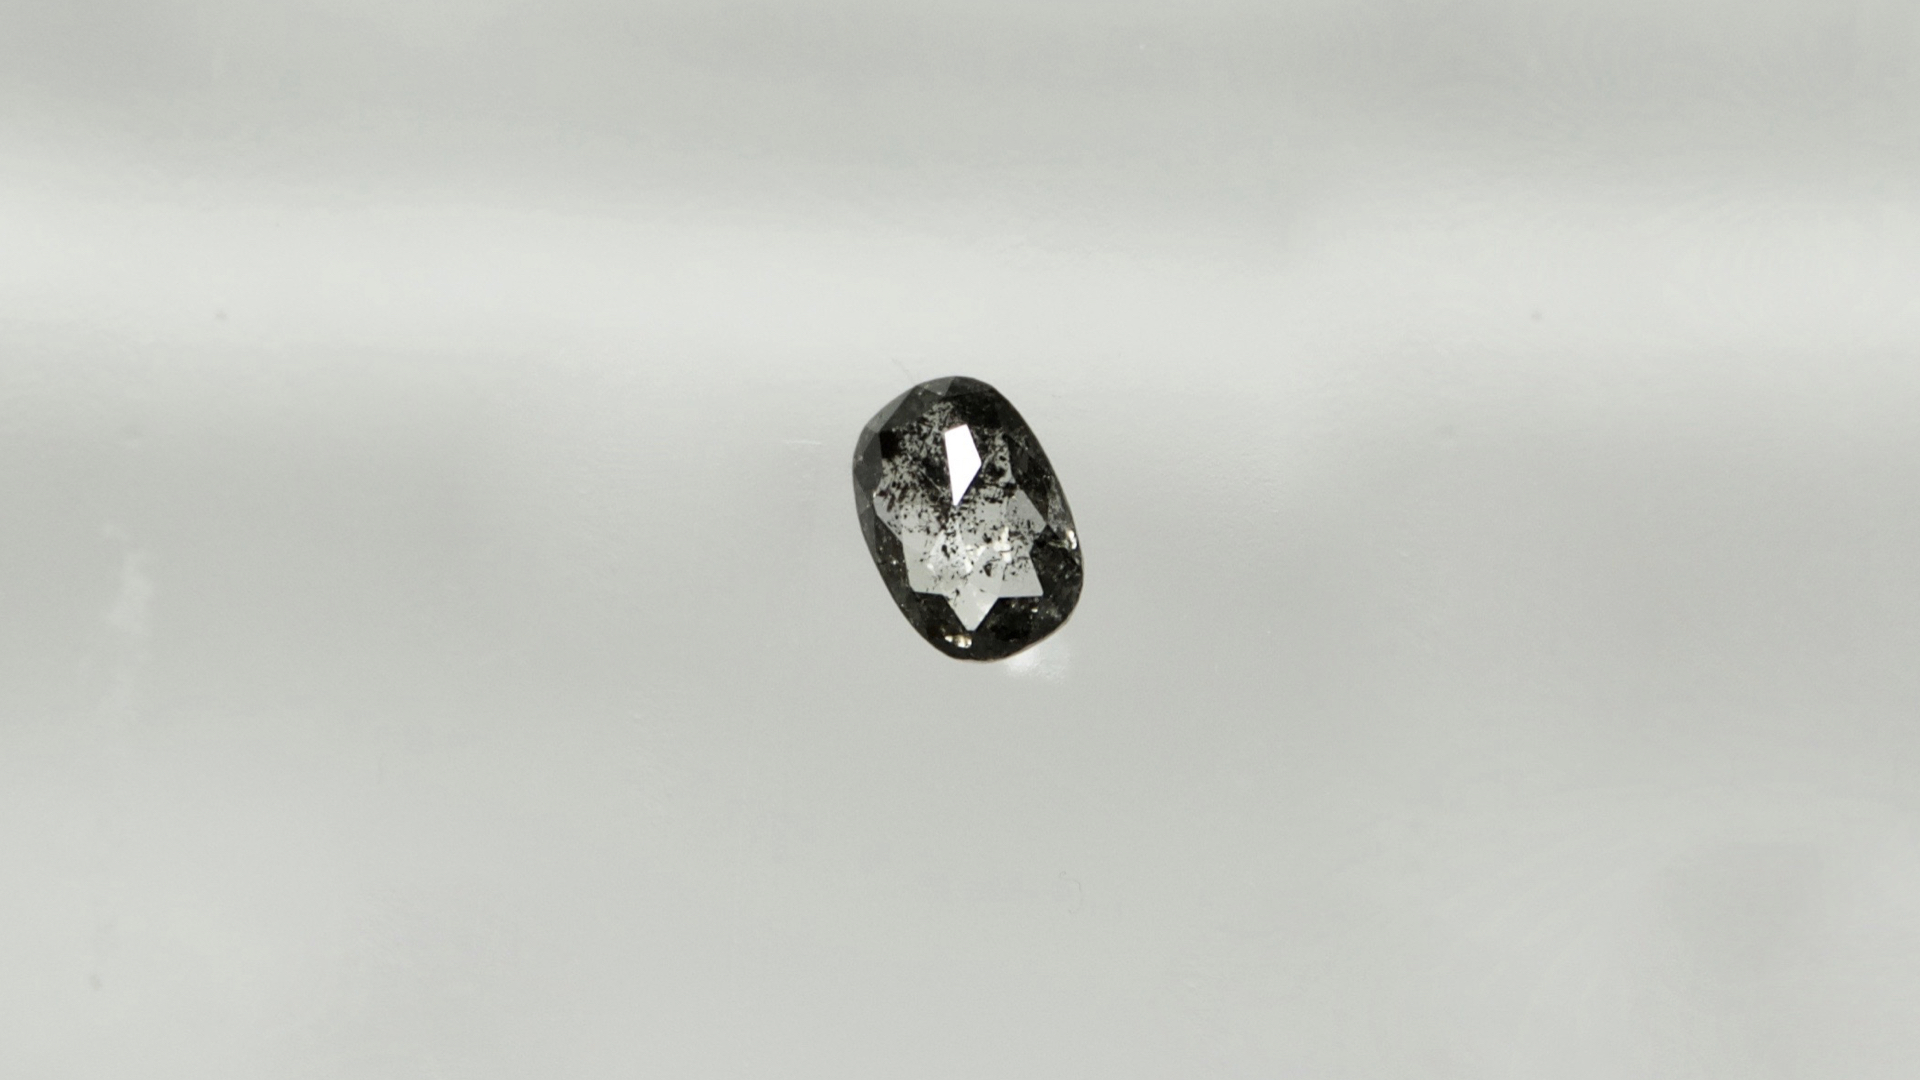 ゼブラダイヤモンド(ZEBRA DIAMOND)はローズカットのオーバルやペアシェイプ、ラウンドもある